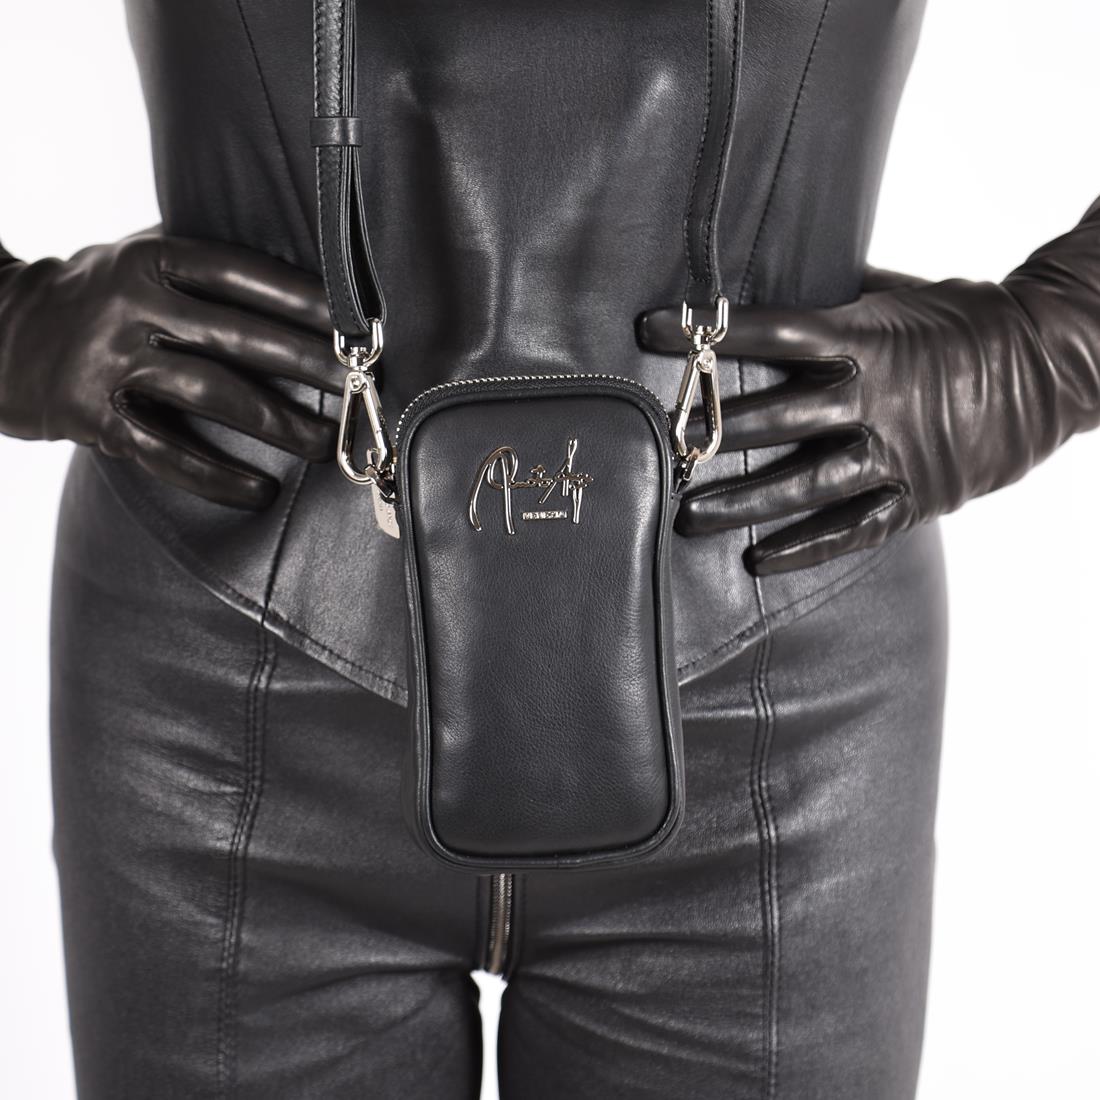 Mini-Tasche - Handy Umhängetasche schwarz Leder